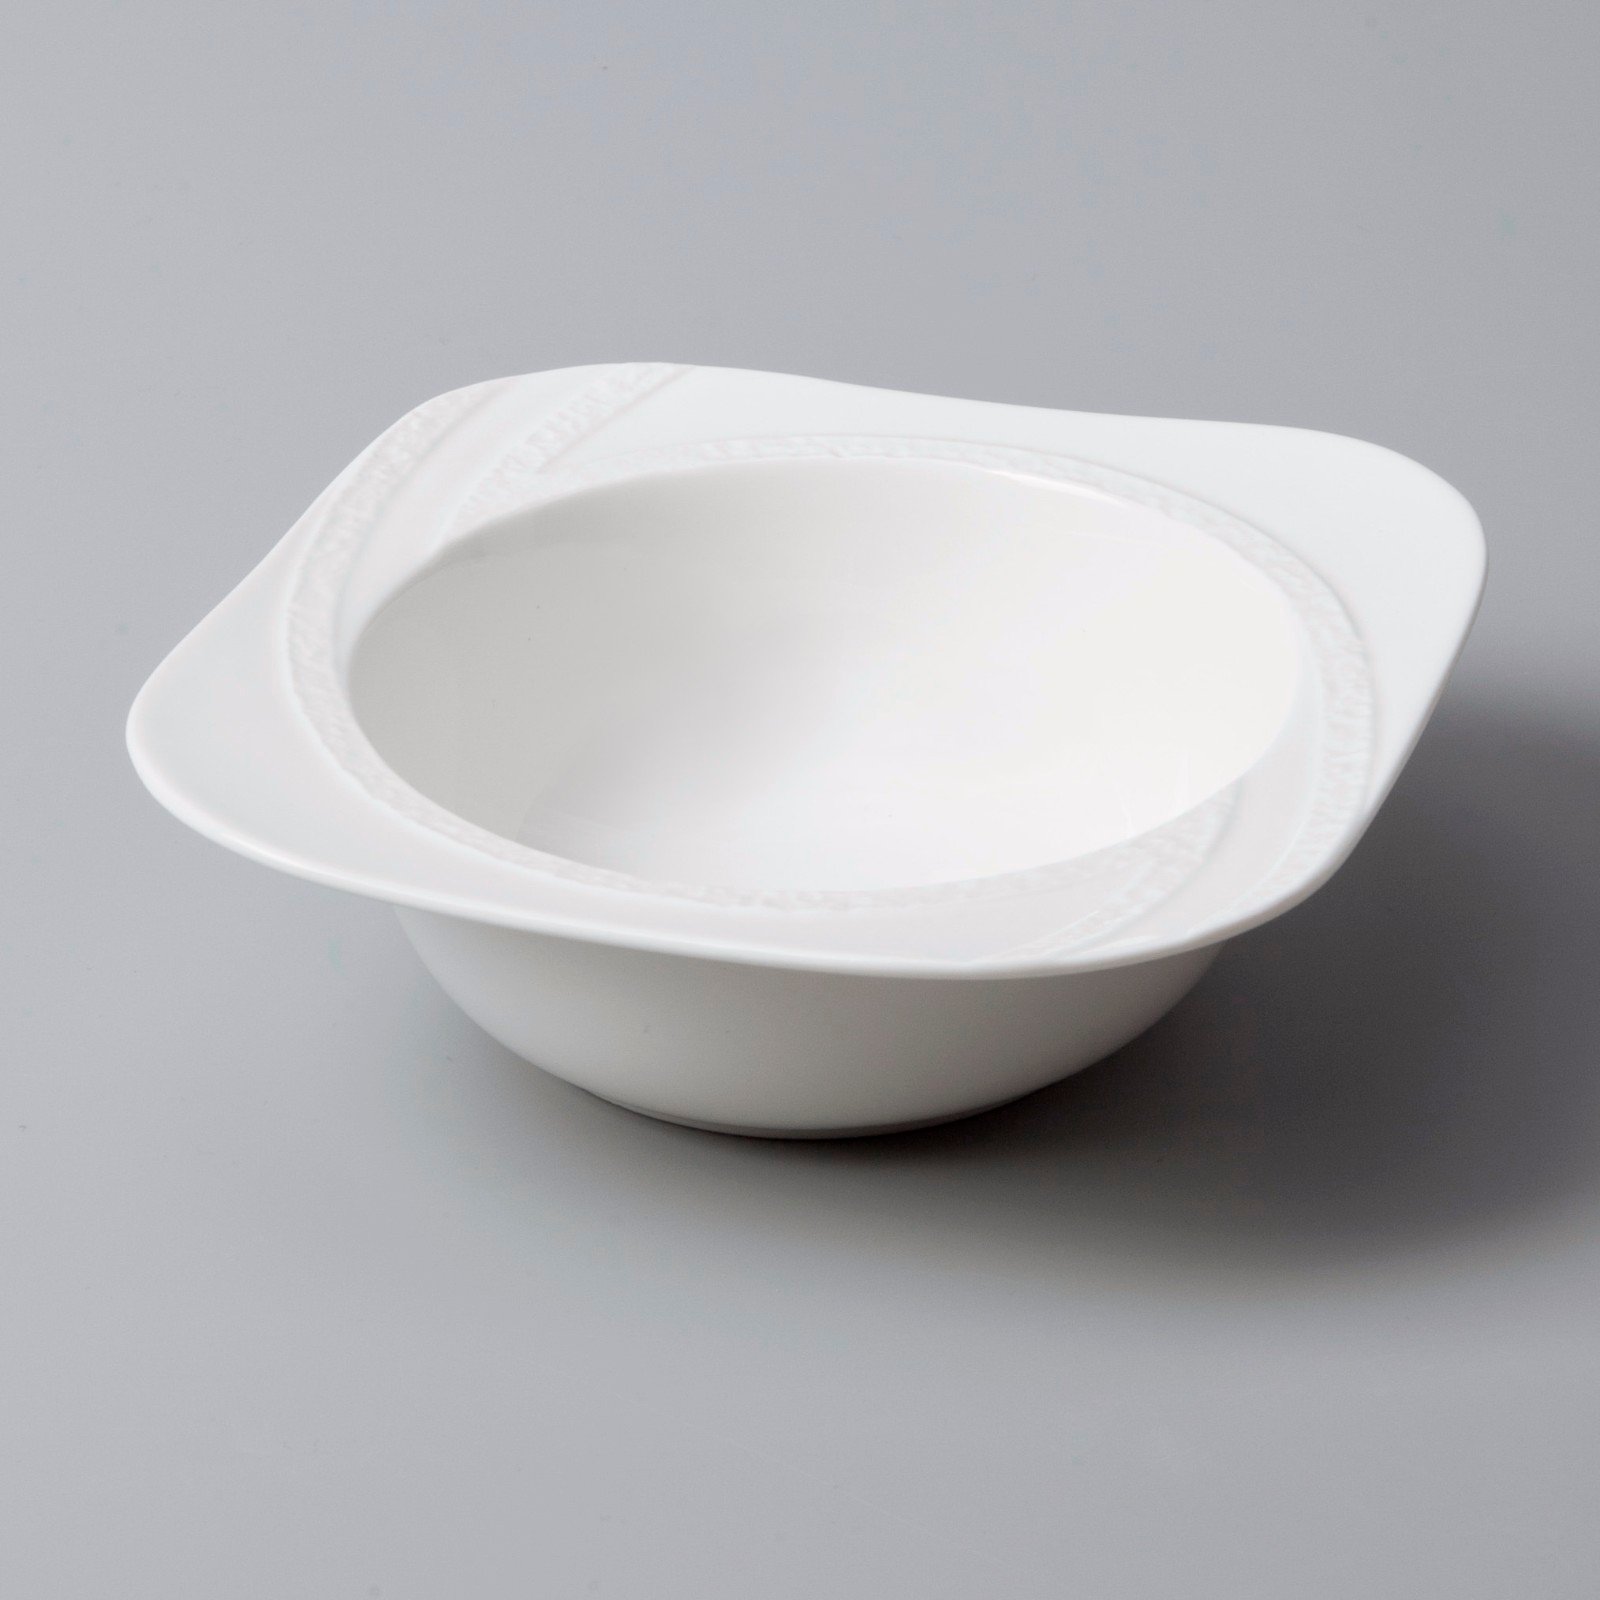 Two Eight rim white bone china dinnerware from China for bistro-4